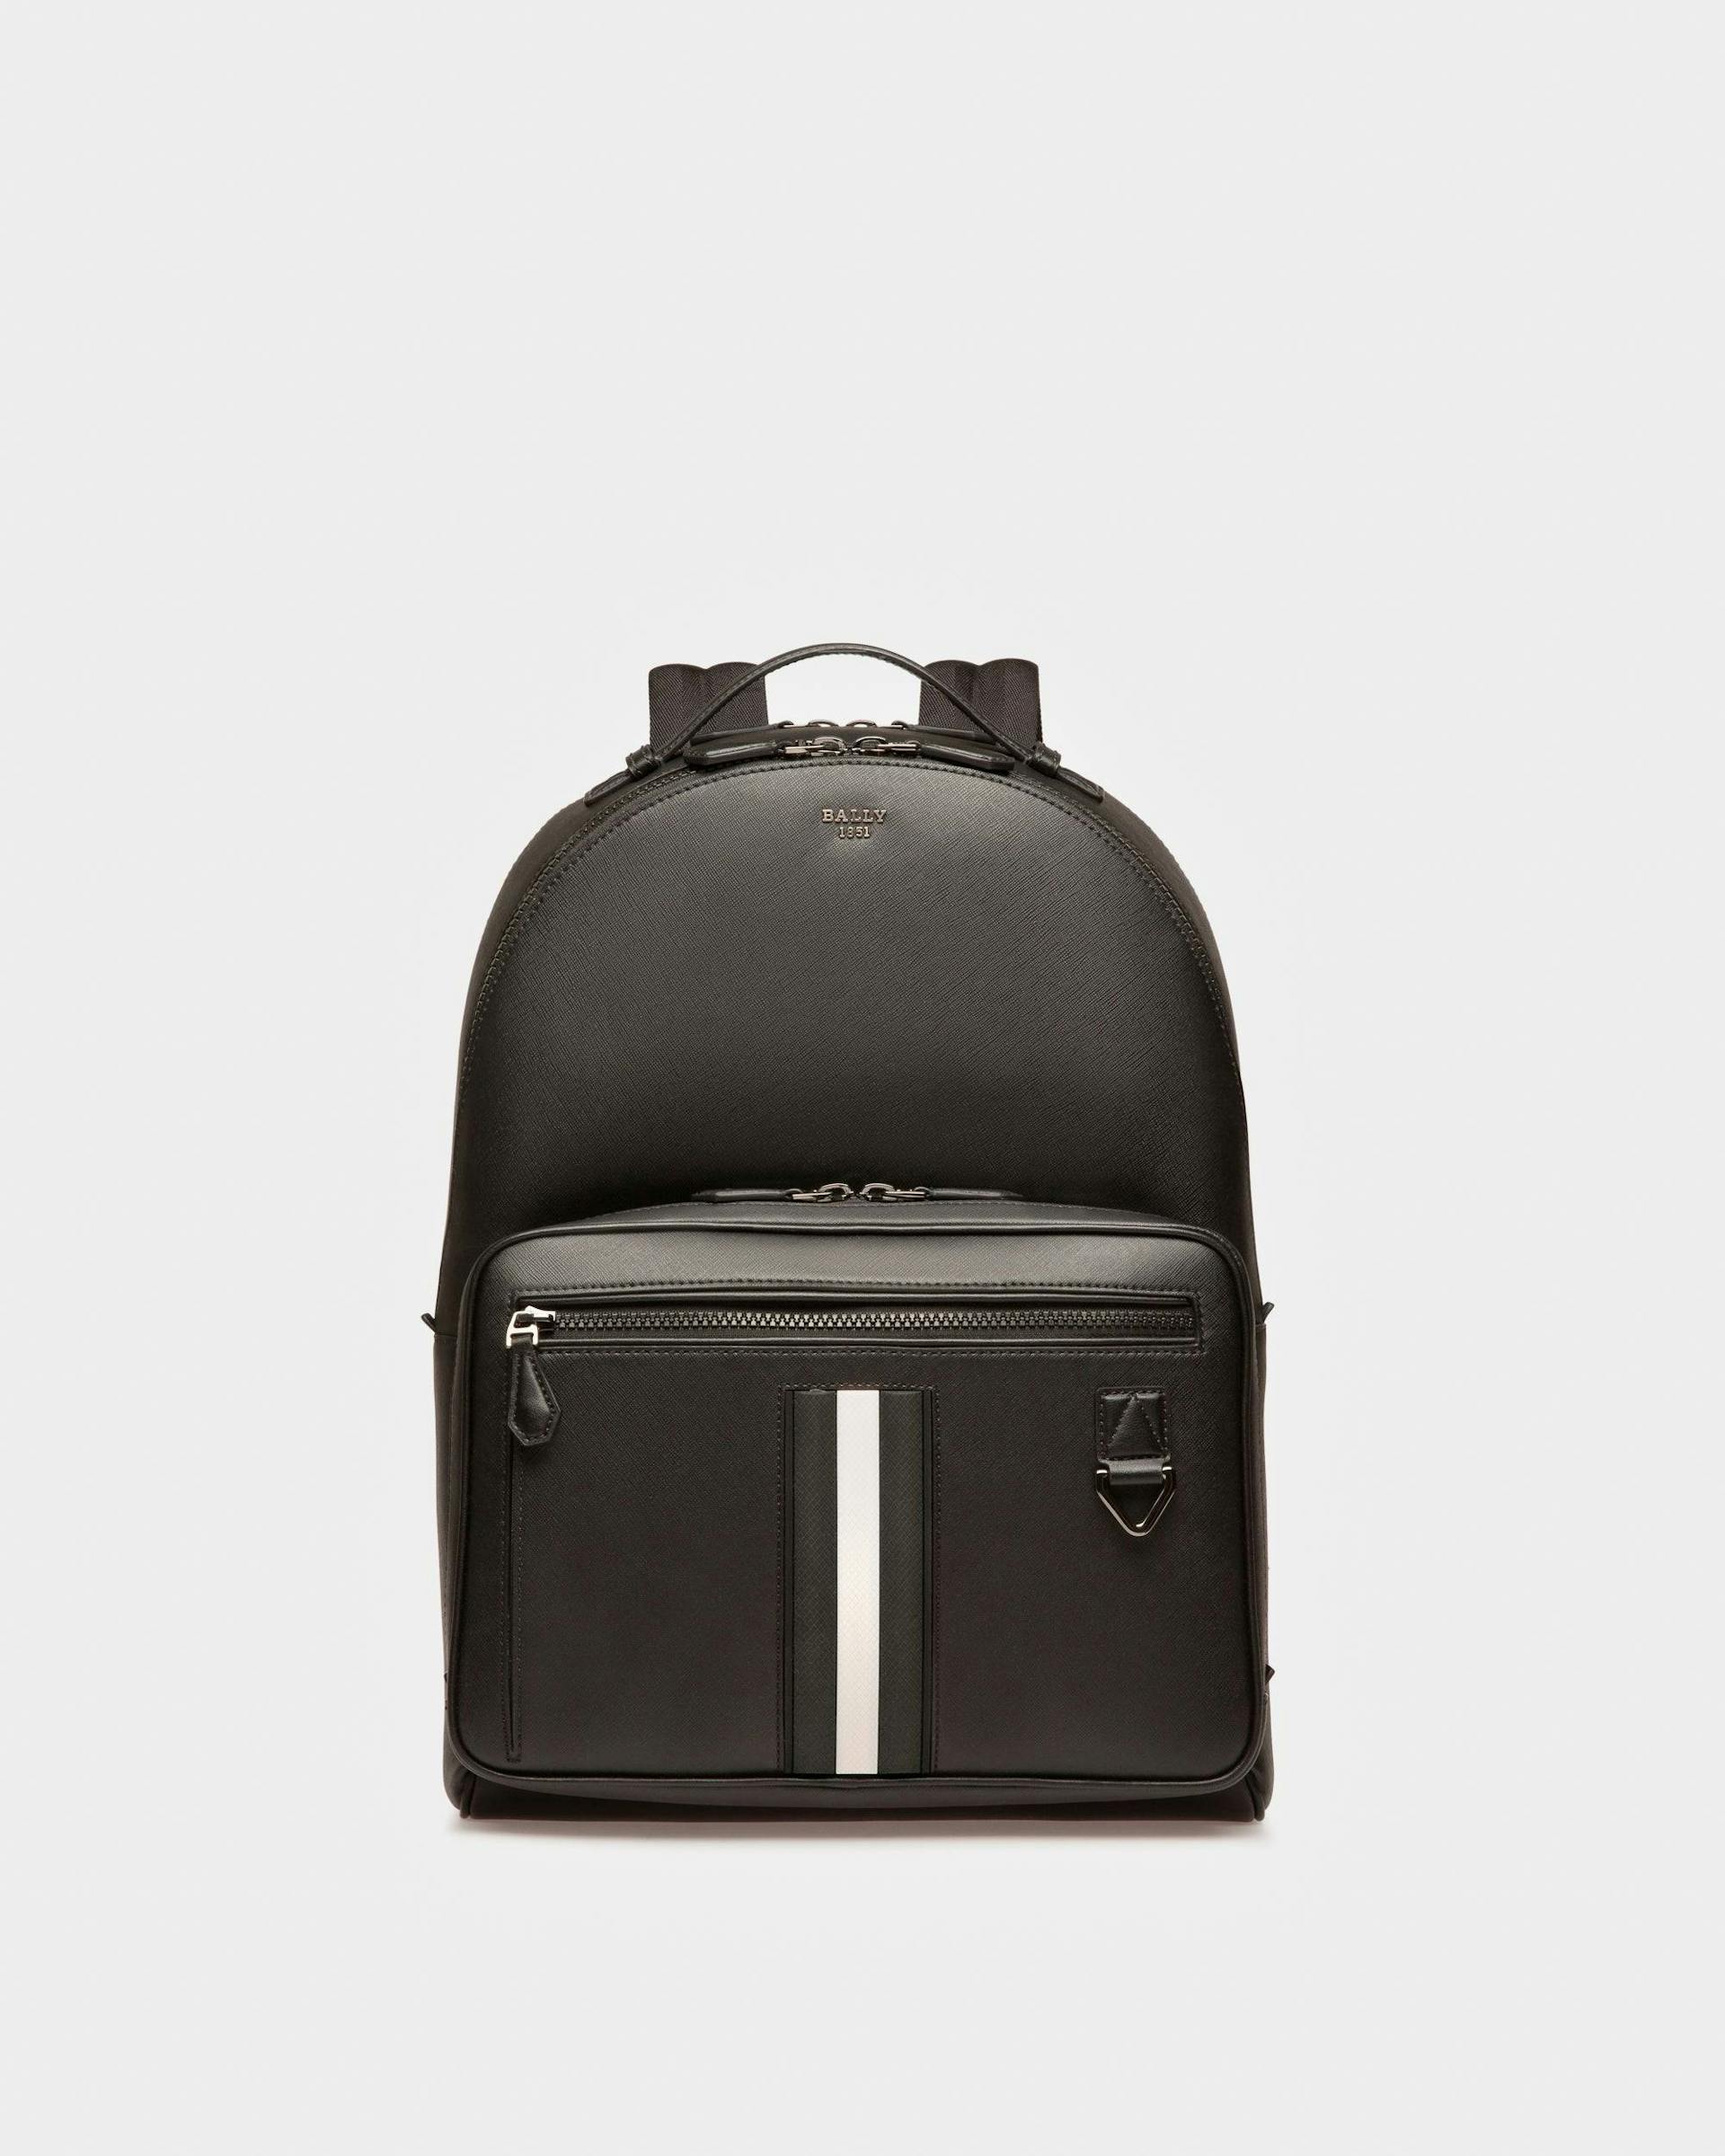 Mavrick Leather Backpack In Black - Men's - Bally - 01